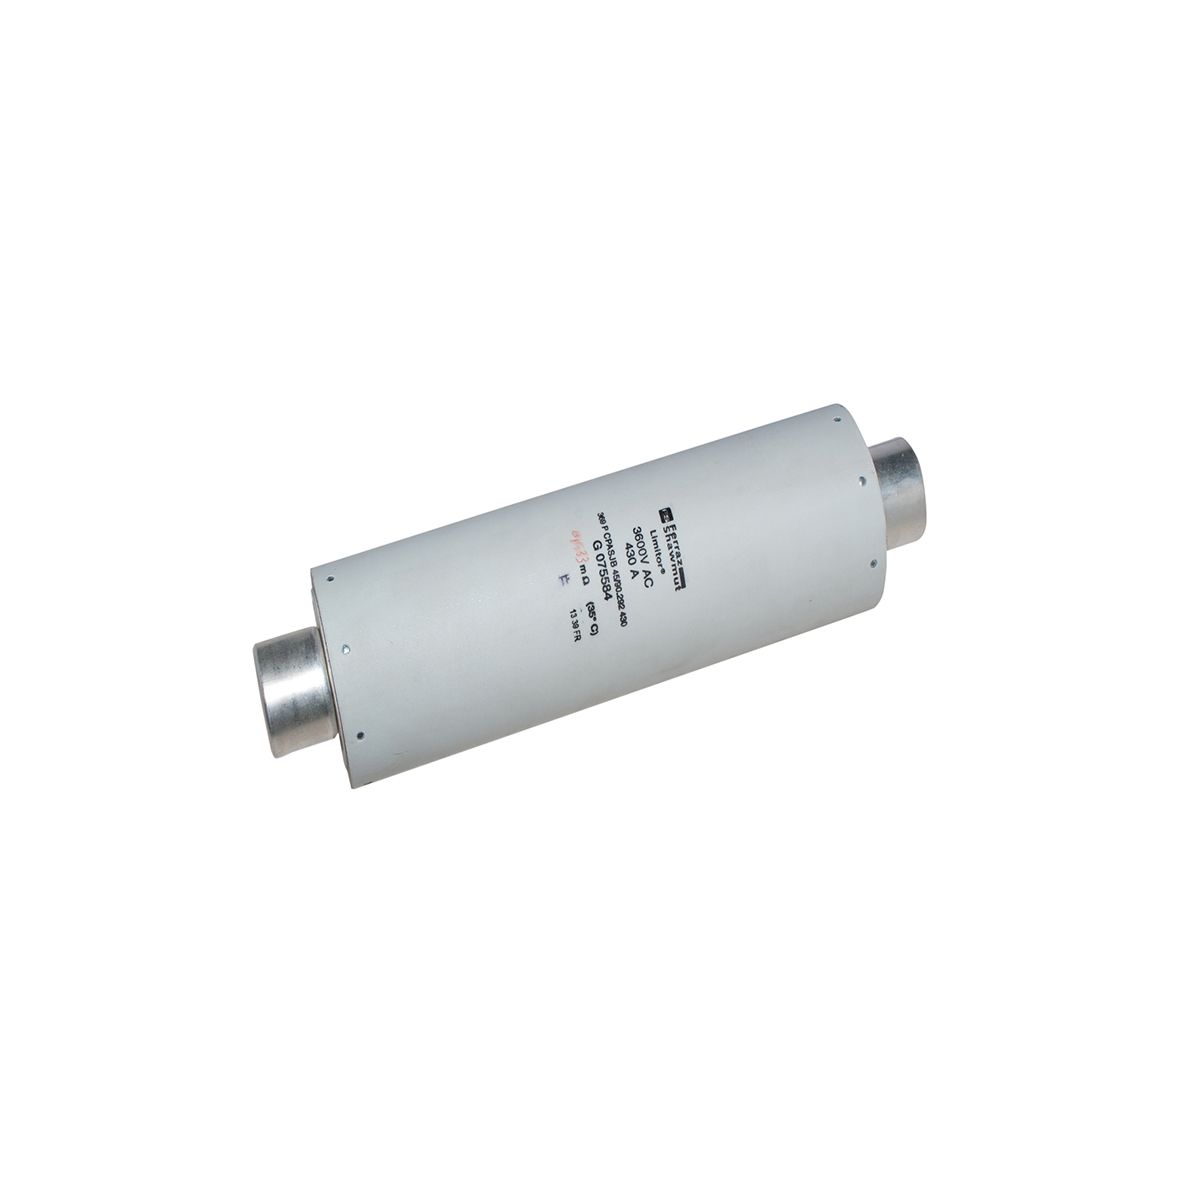 G075584 - DIN 43625 fuse for HV motor, IEC 60644, 292mm, 45mm, striker 50N, 3,6kV, 430A